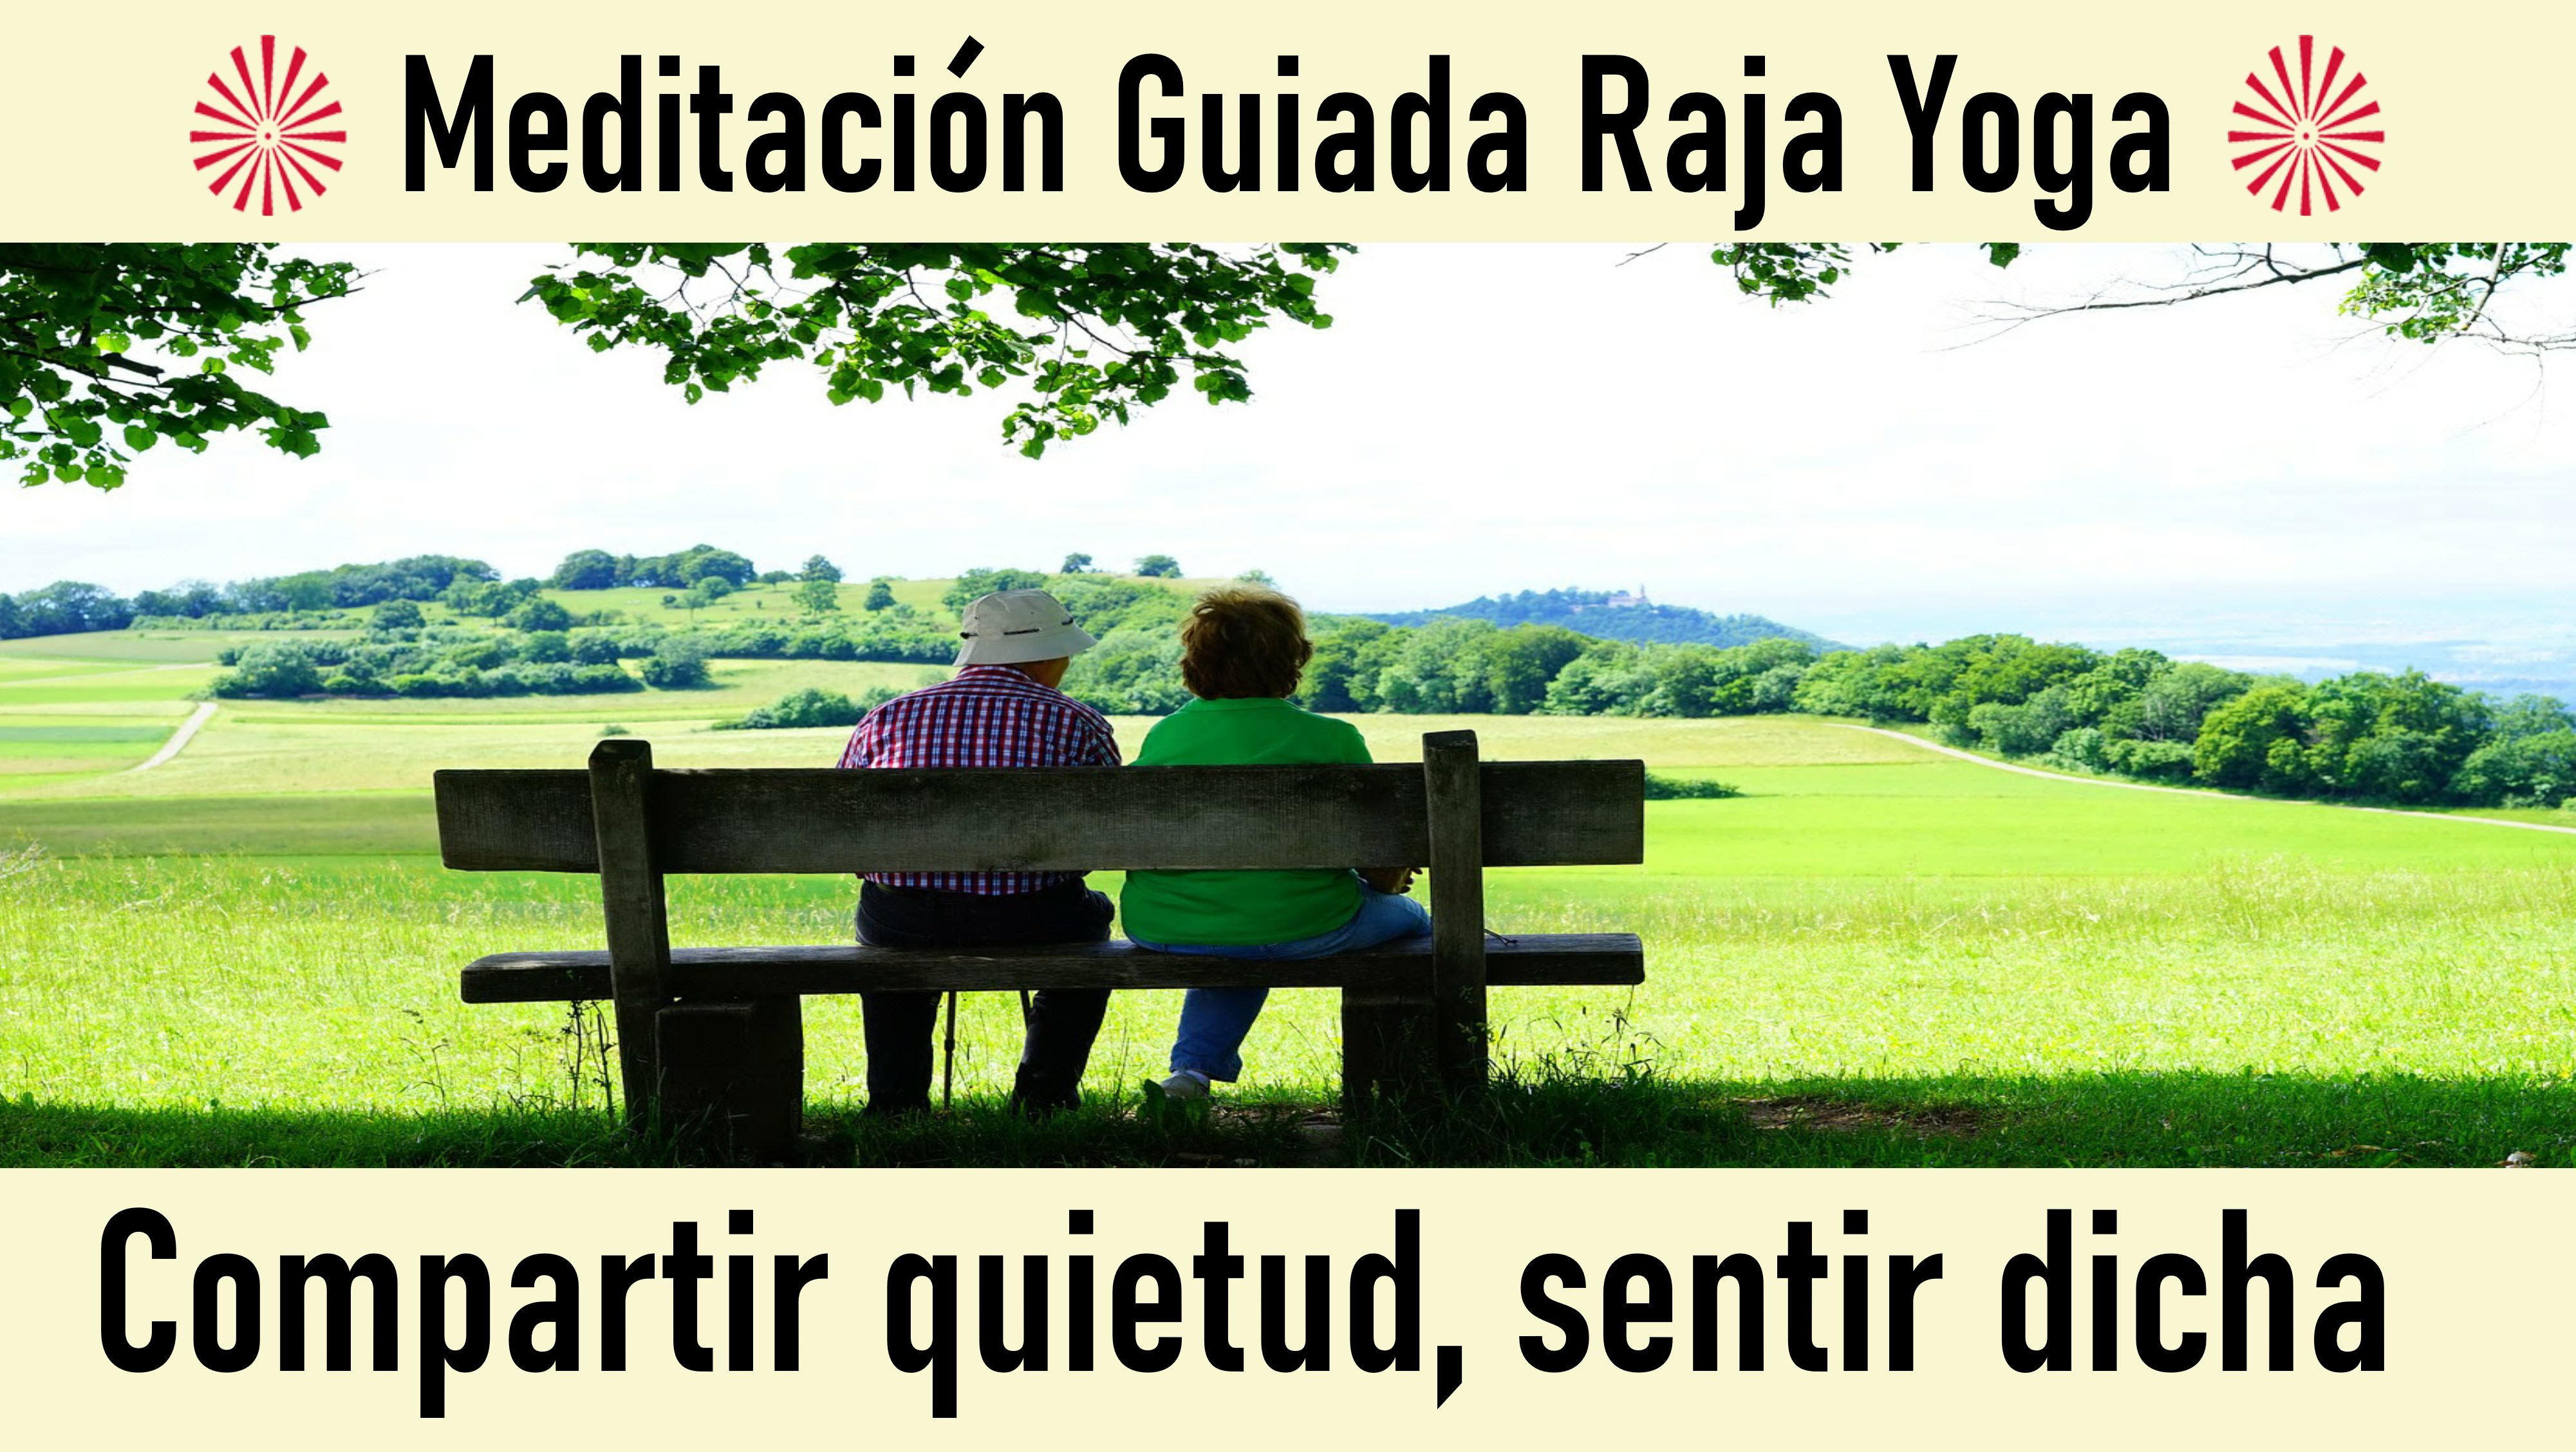 Meditación Raja Yoga: Compartir quietud, sentir dicha (29 Mayo 2020) On-line desde Barcelona